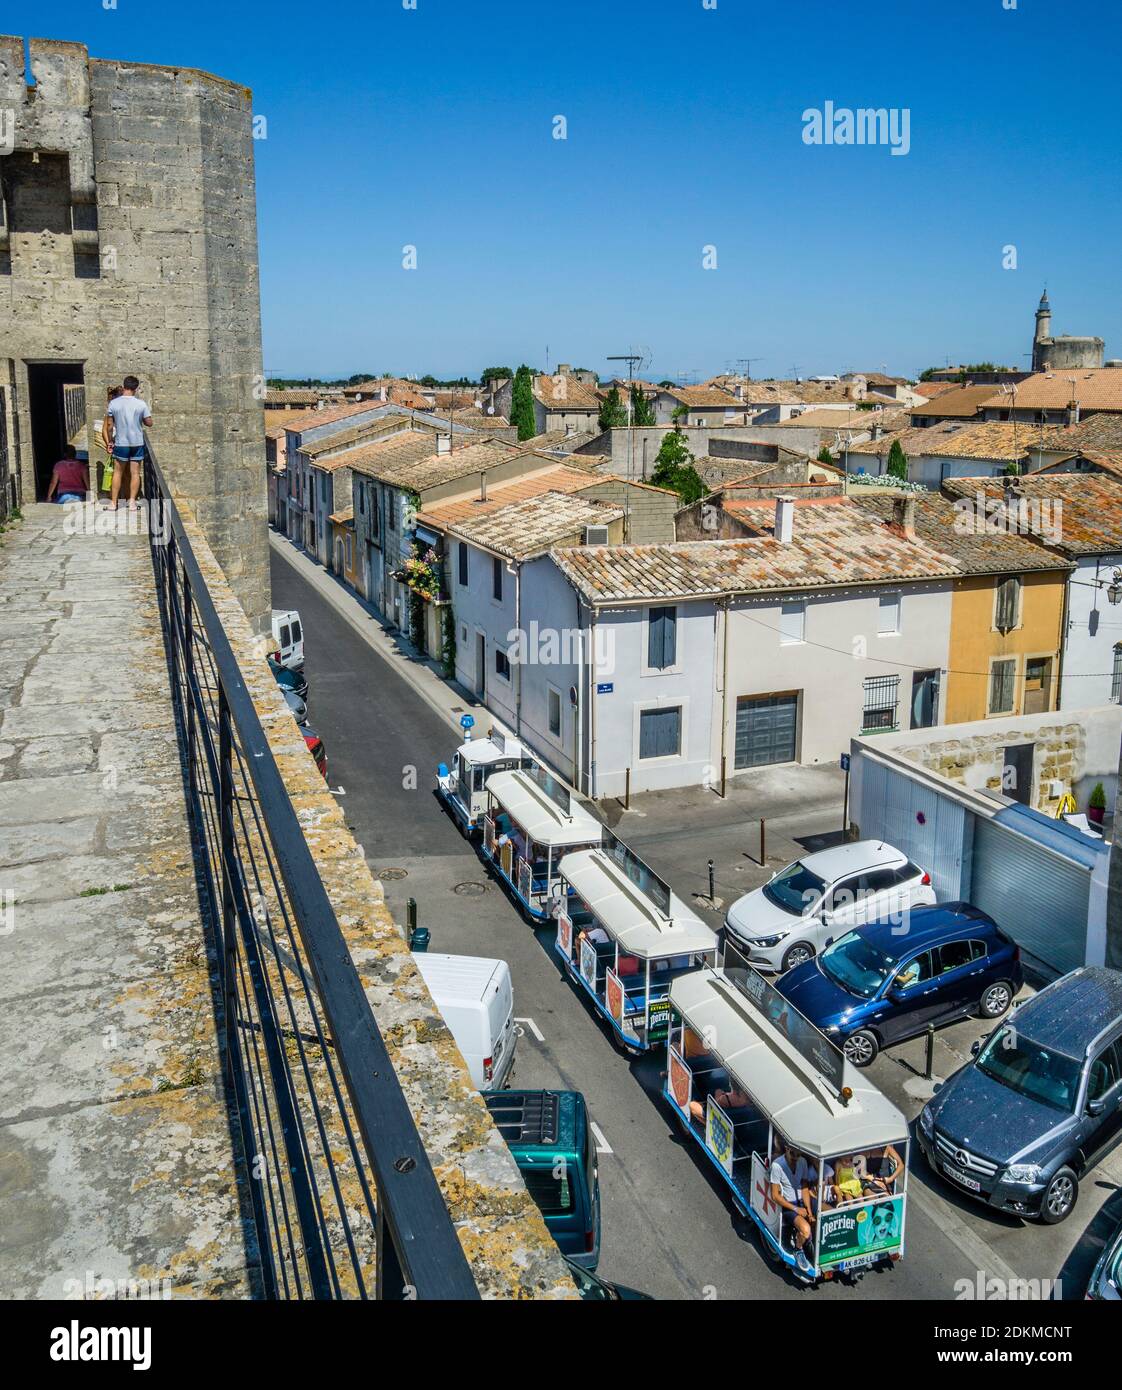 Vue depuis les remparts sur les toits de la ville médiévale fortifiée d'Aigues-mortes, petite Camargue, département du Gard, région occitanie, Franc du Sud Banque D'Images